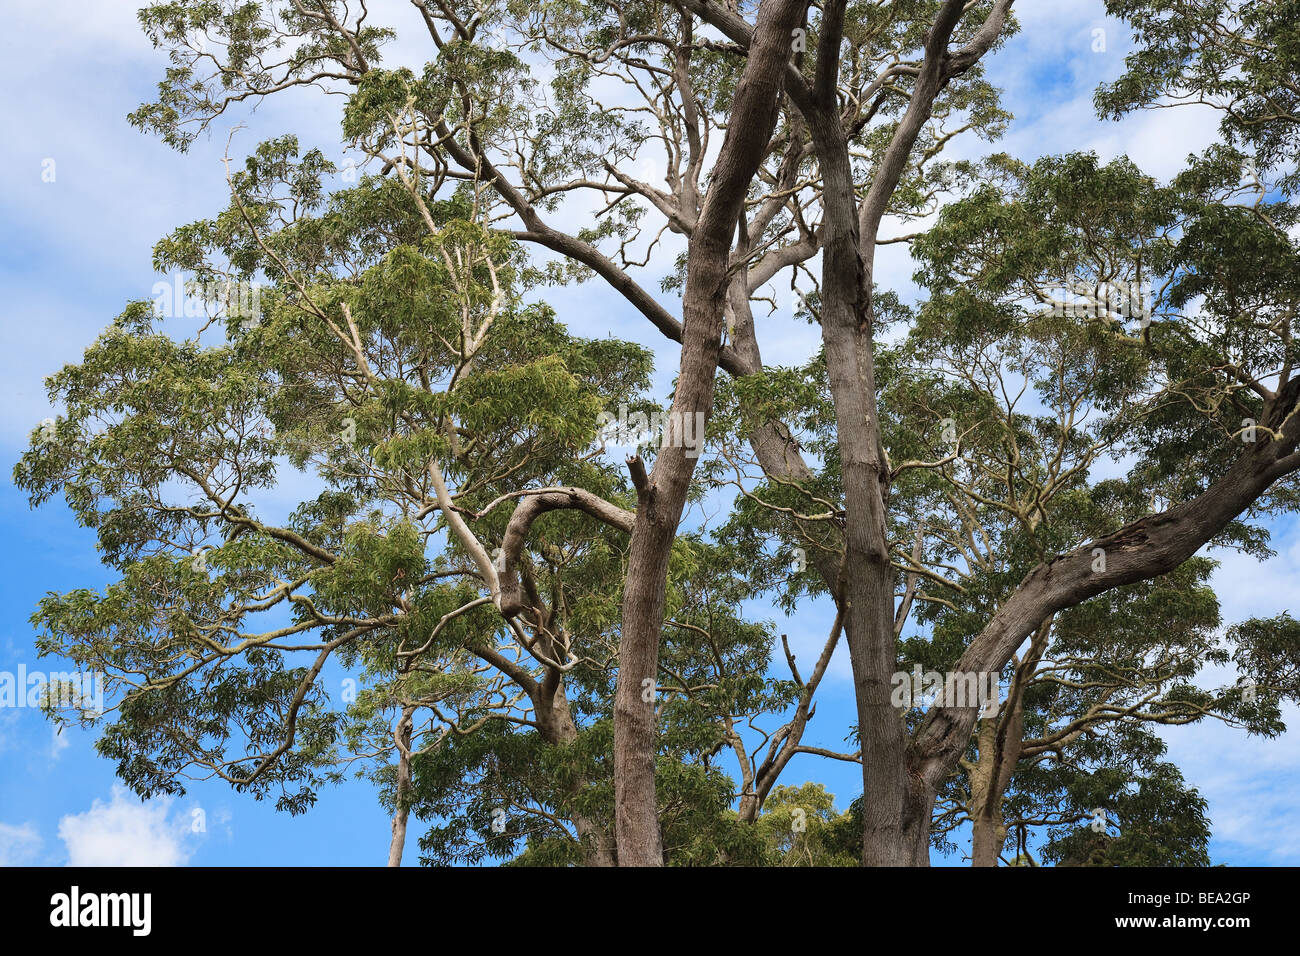 Koa tree in Hawaii Stock Photo